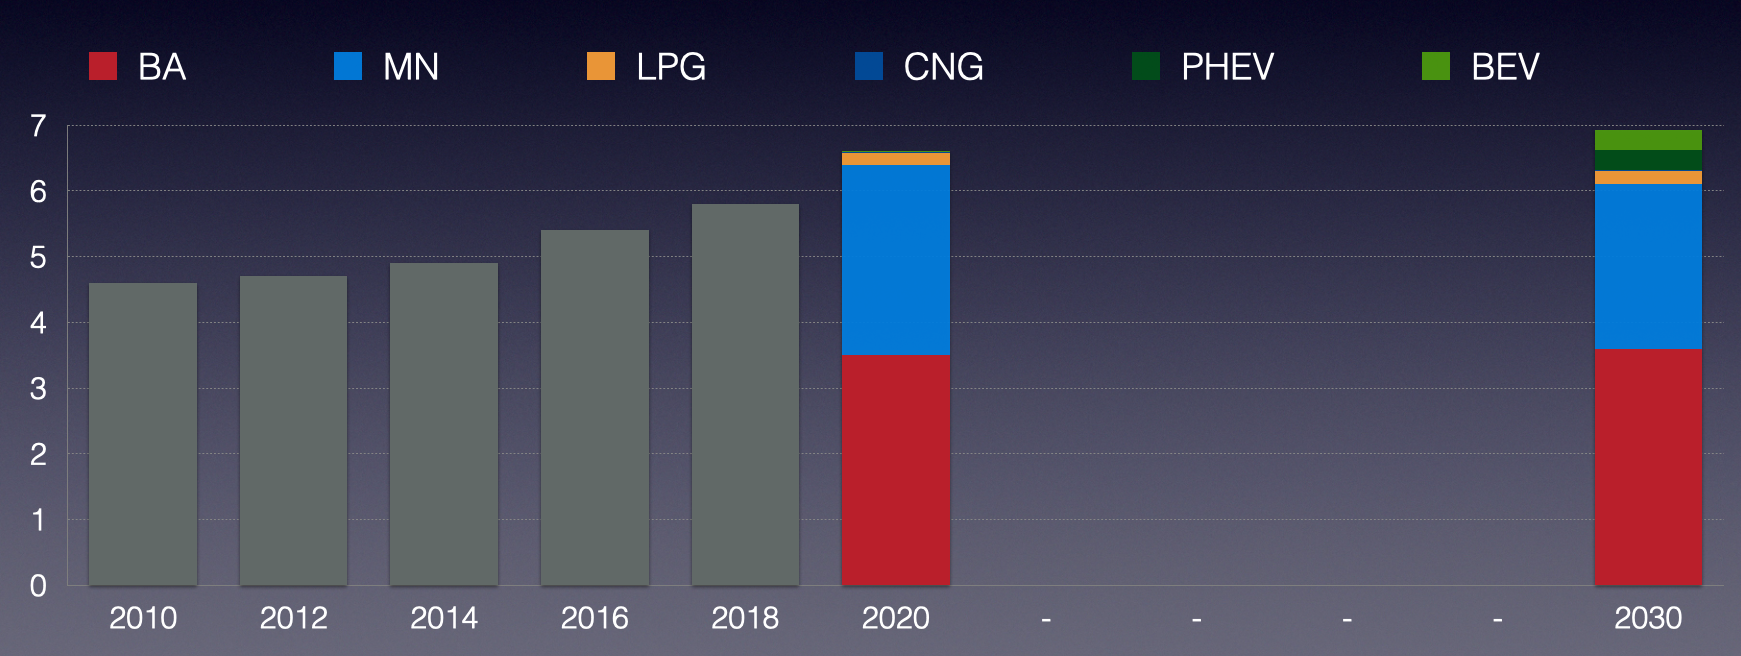 Počty vozů kategorie M (osobní) na českých silnicích v letech 2010–2018. Počty vozů kategorií M+N1 (osobní + lehké dodávkové) v roce 2020 a výhled pro rok 2030. Paliva: BA (benzín), MN (nafta), LPG, CNG (plynové pohony), PHEV (plug-in hybridy), BEV (bateriové vozy). Pokud bude naplněn optimistický scénář prodejů elektromobilů do roku 2030, bude se na českých silnicích (dle Národního akčního plánu čisté mobility i dle vyjádření největších výrobců auto-mobilů) pohybovat 250 až 500 tisíc elektromobilů. Počet vozů se spalovacím motorem se nezmění, elektromobily vykryjí jen nárůst počtu vozidel na silnicích.